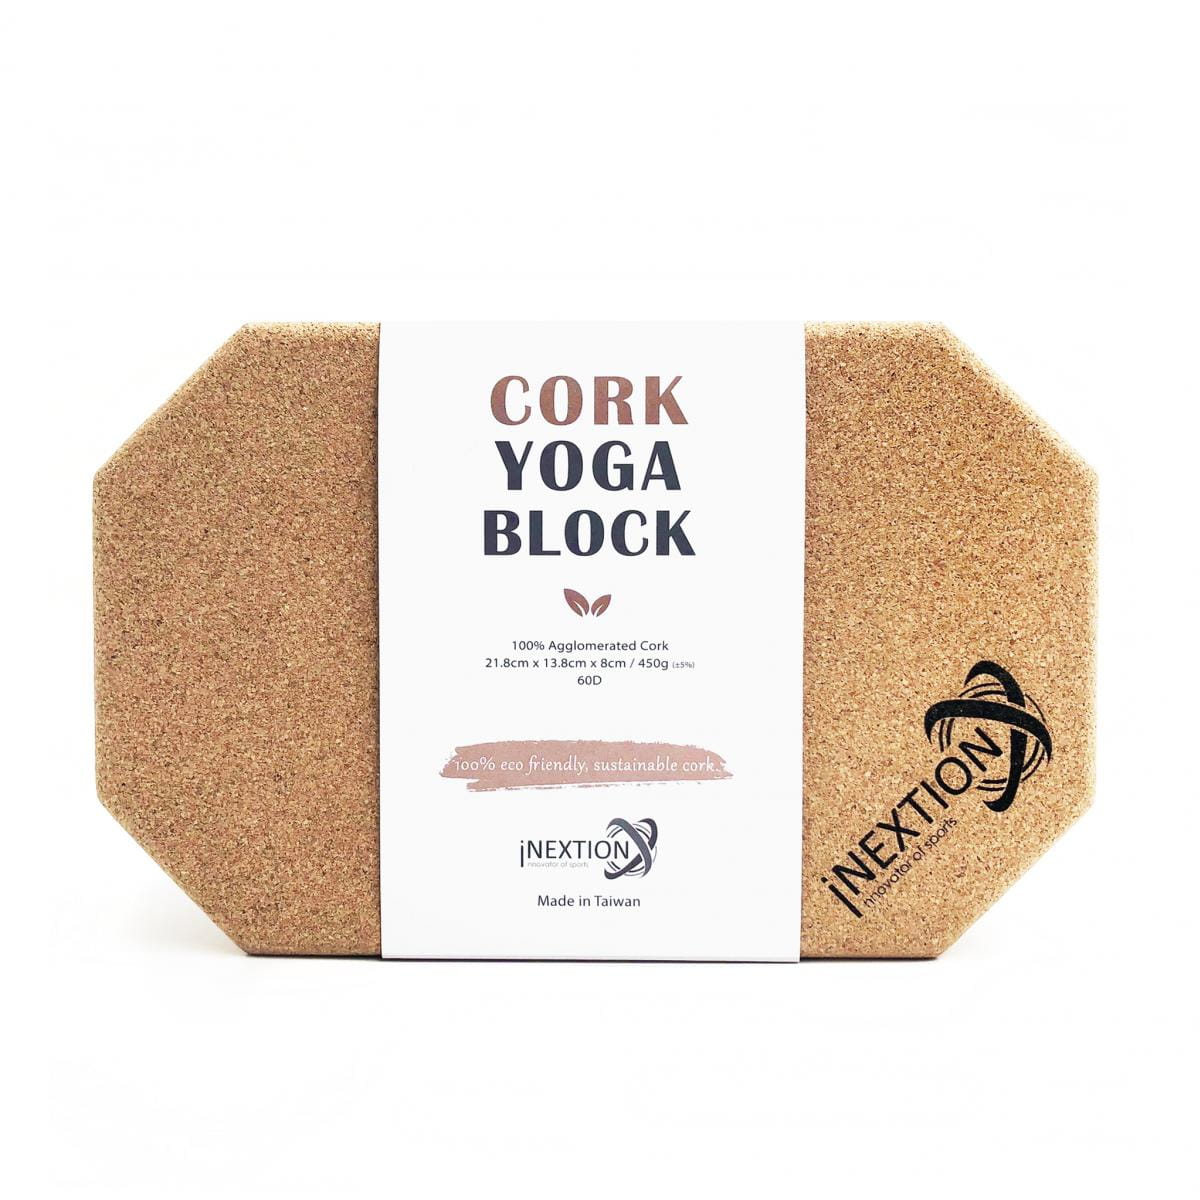 【INEXTION】Cork Yoga Block 羽量級八角軟木瑜珈磚 60D 0